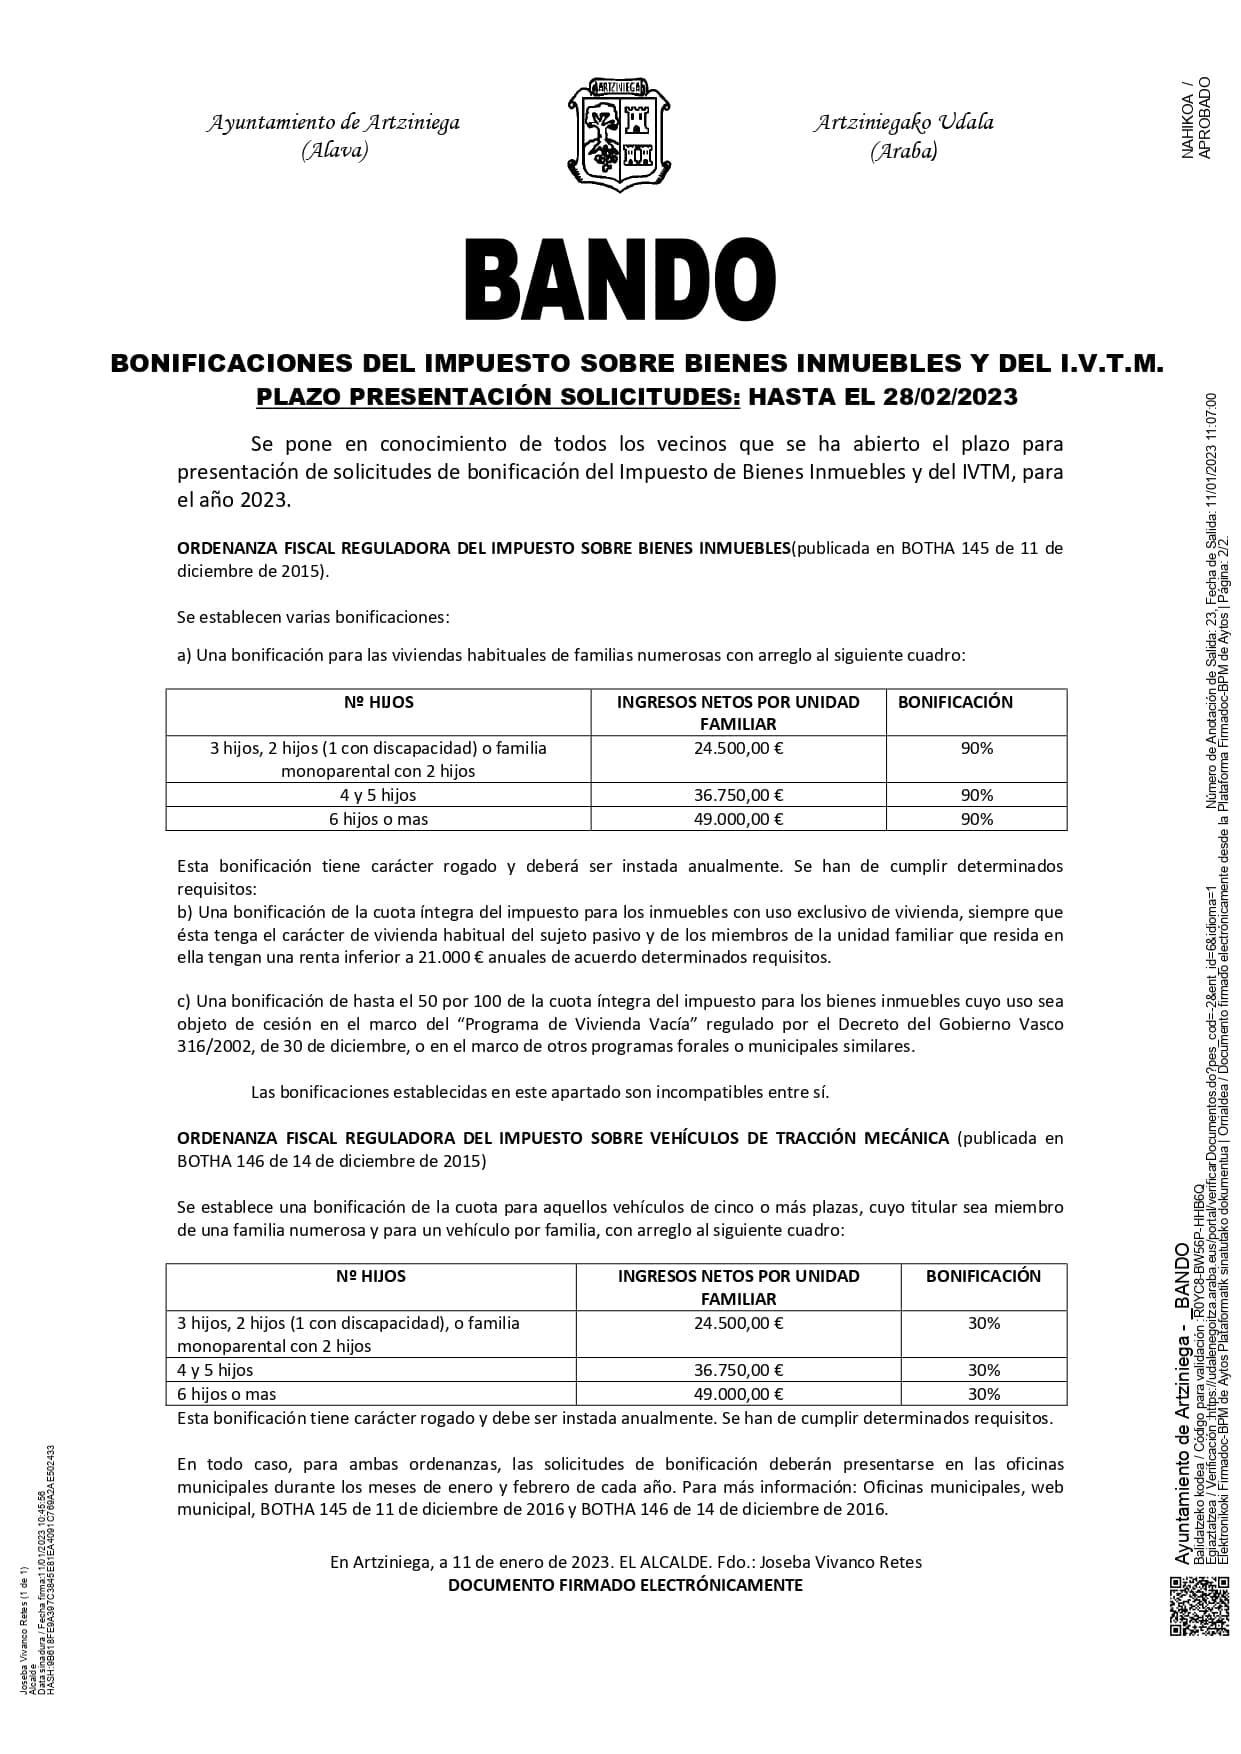 BANDO: COBRO DE LOS IMPUESTOS MUNICIPALES